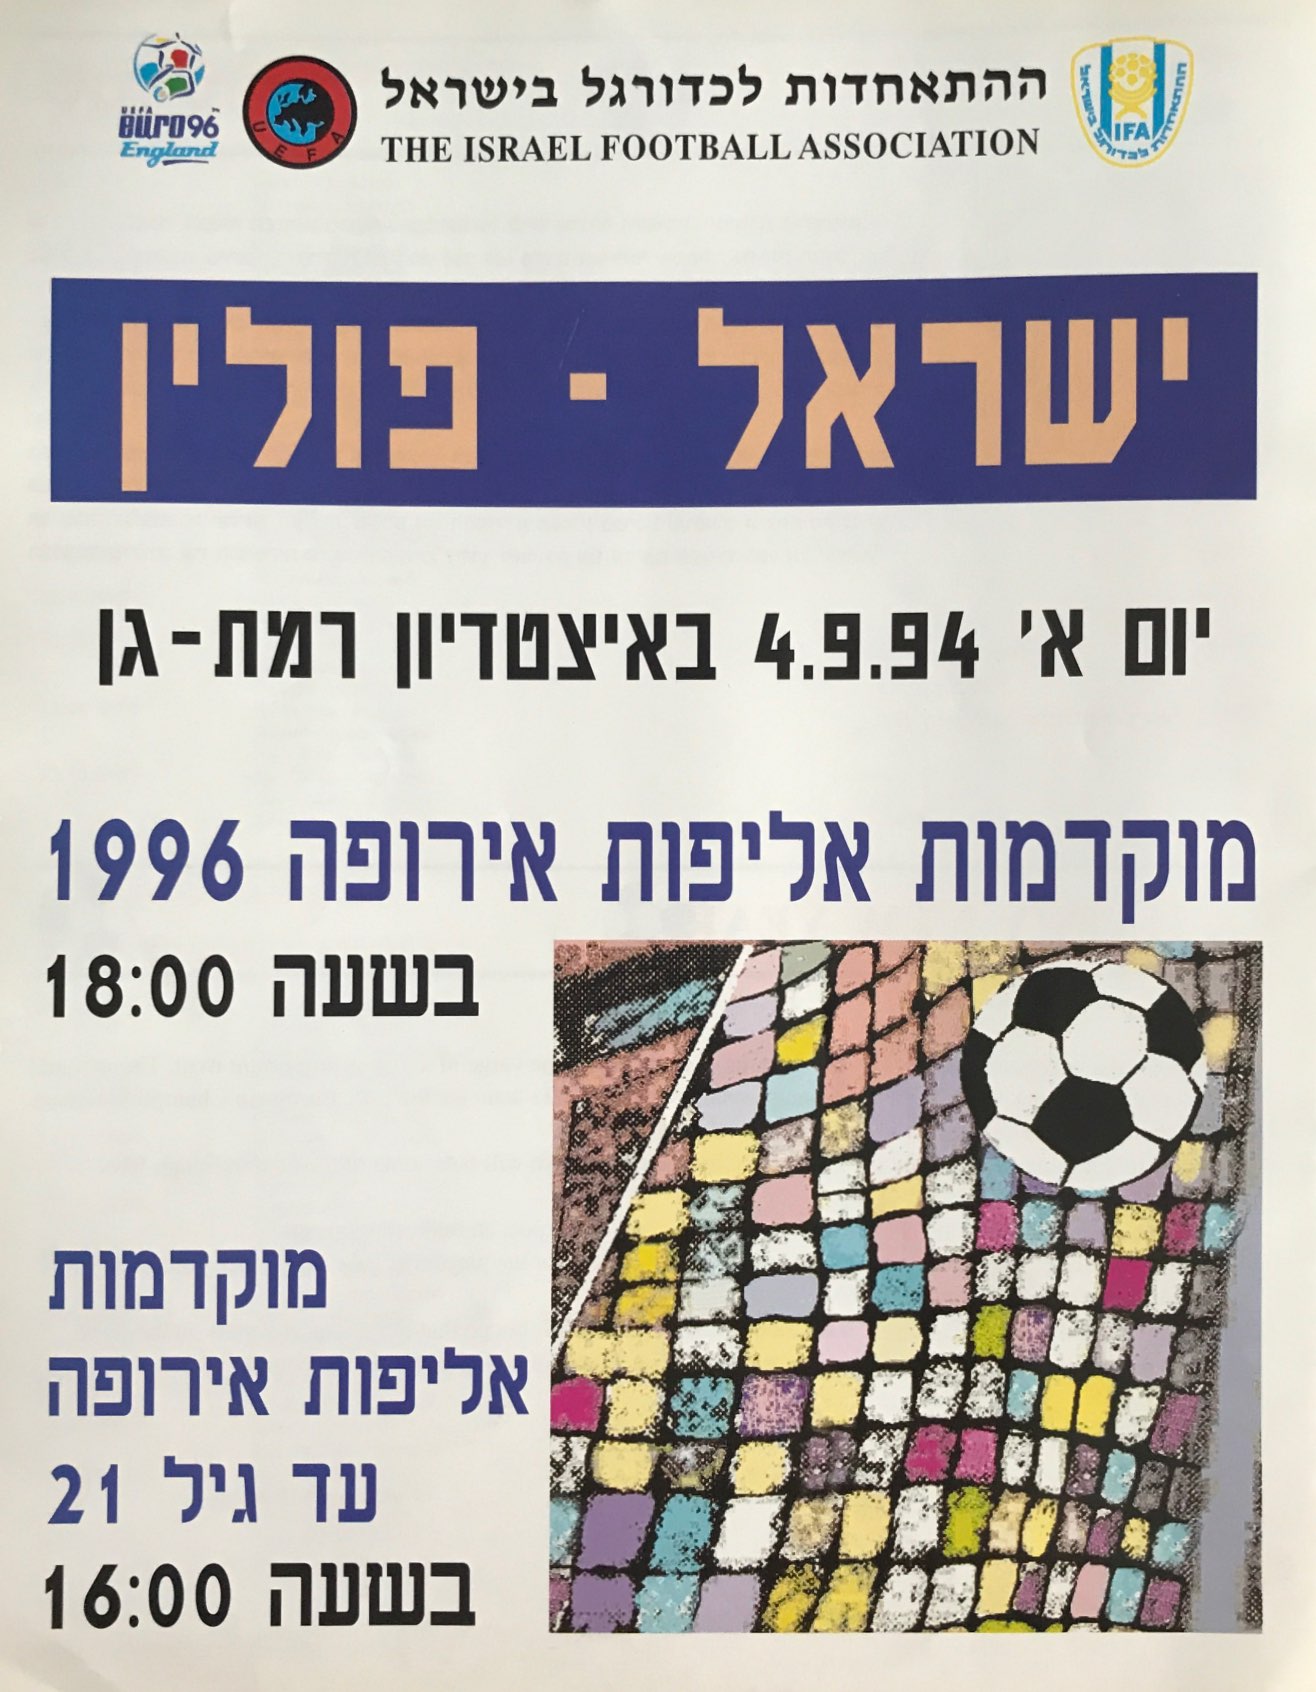 Program meczowy Izrael - Polska 2:1 (04.09.1994)